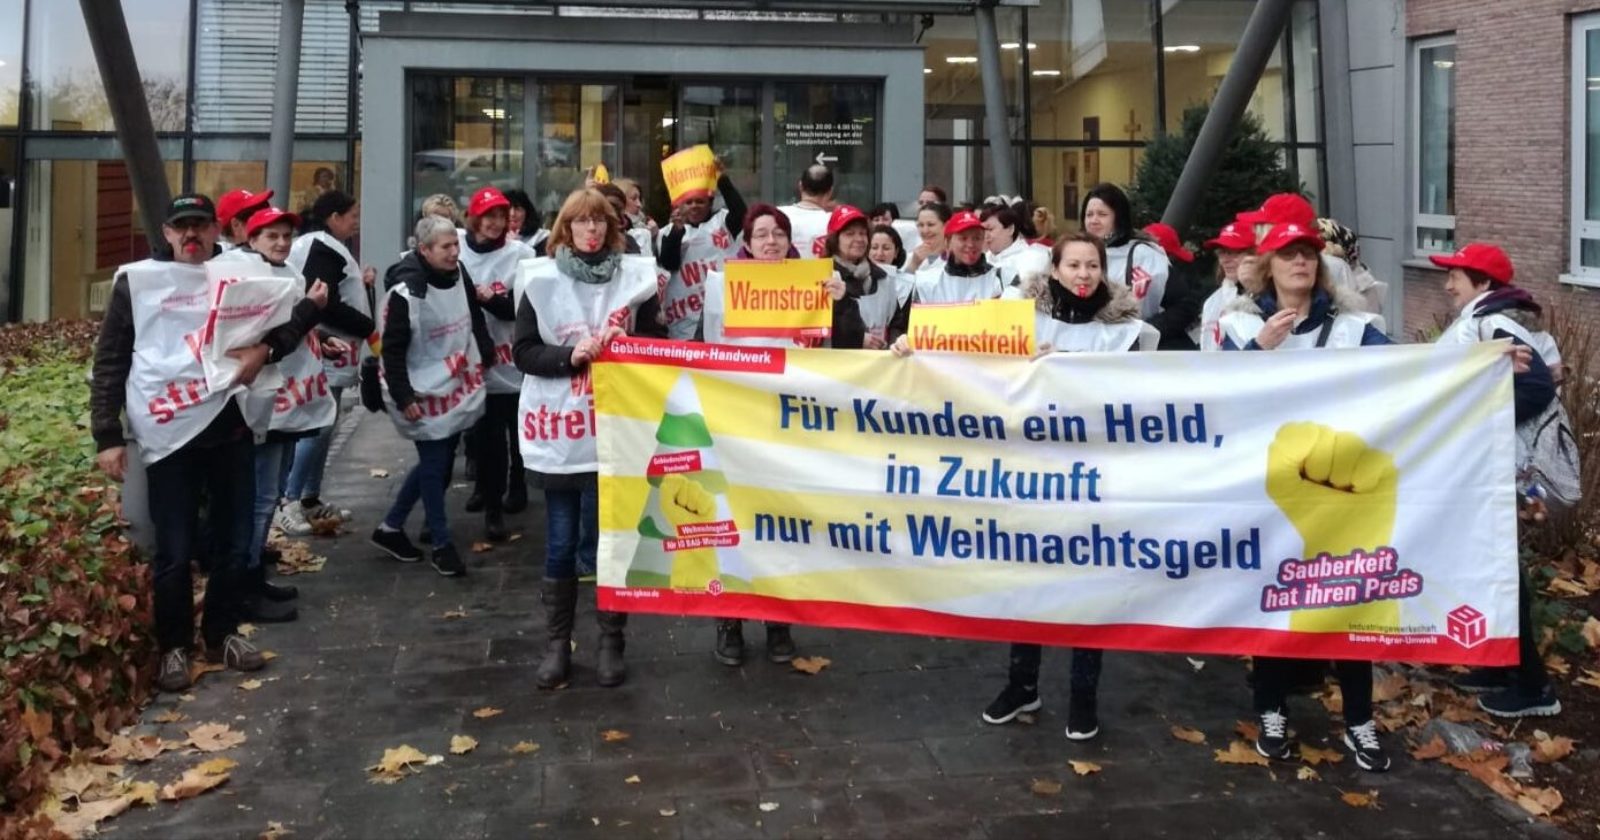 Warnstreiks fürs Weihnachtsgeld: 120 Gebäudereiniger in Dortmund legen ihre Arbeit nieder